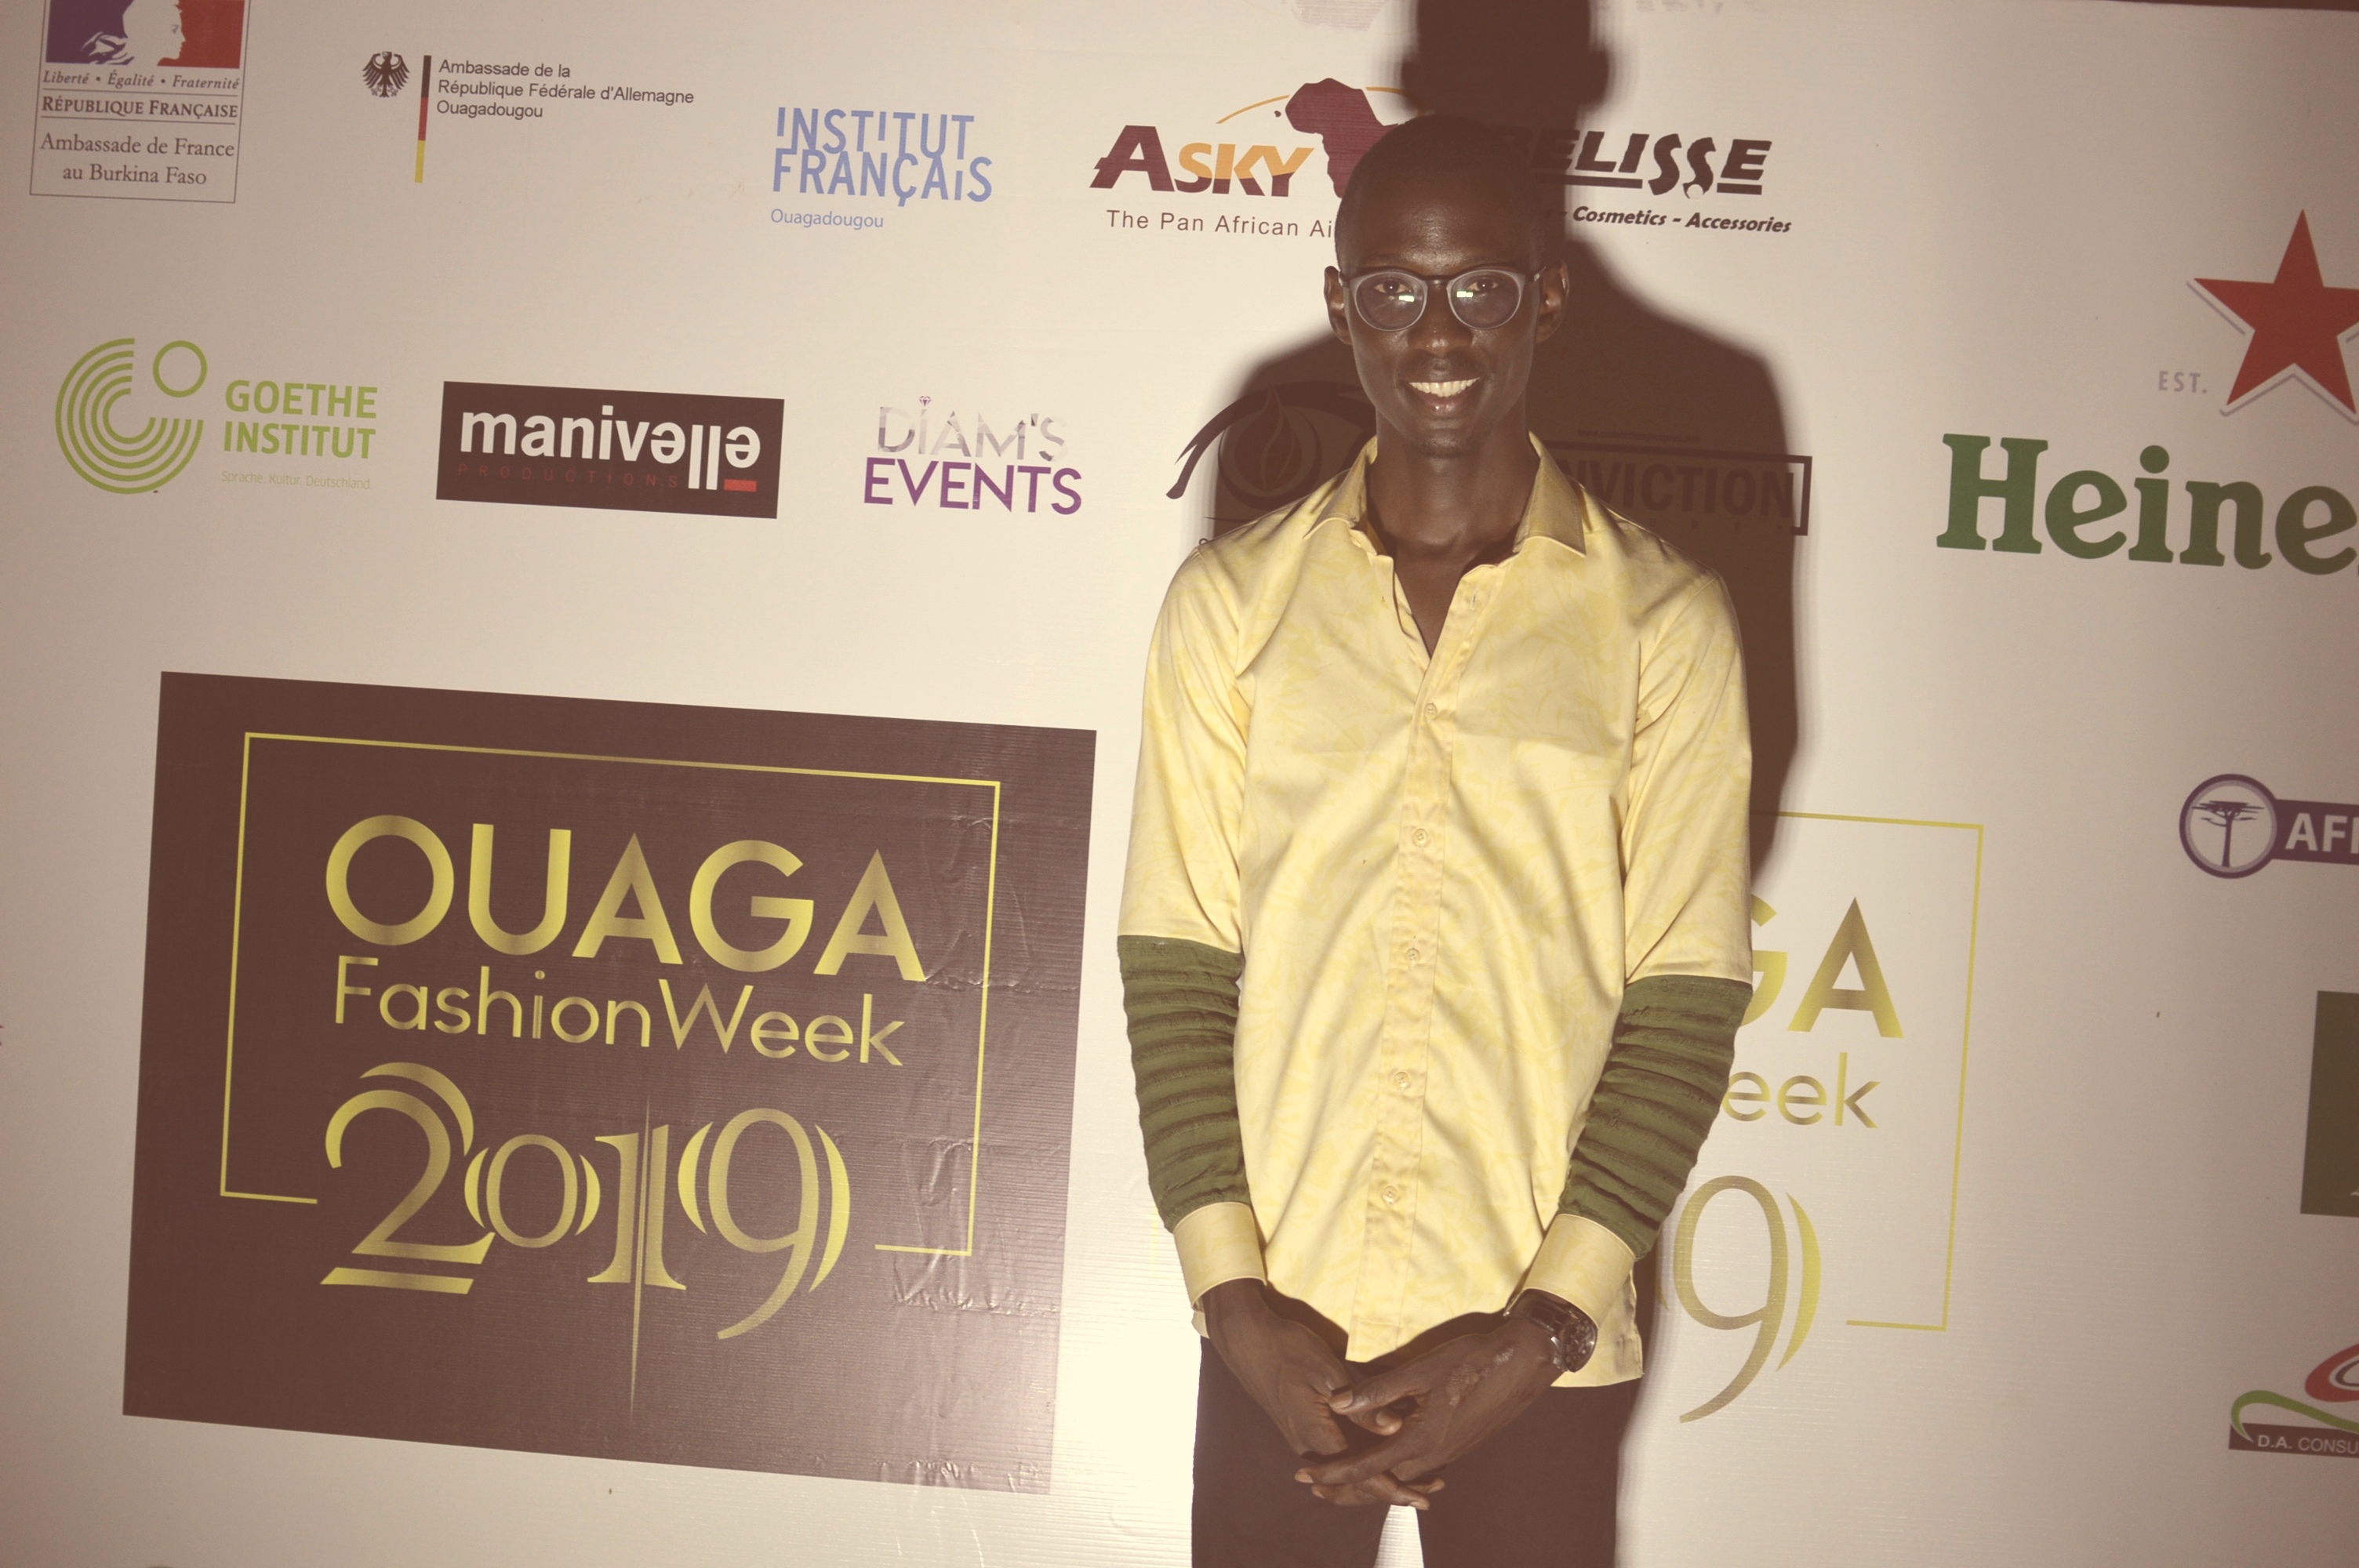  Ouaga Fashion Week, acte II : Quand le Faso Danfani  et le Koko Donda sont mis en exergue.